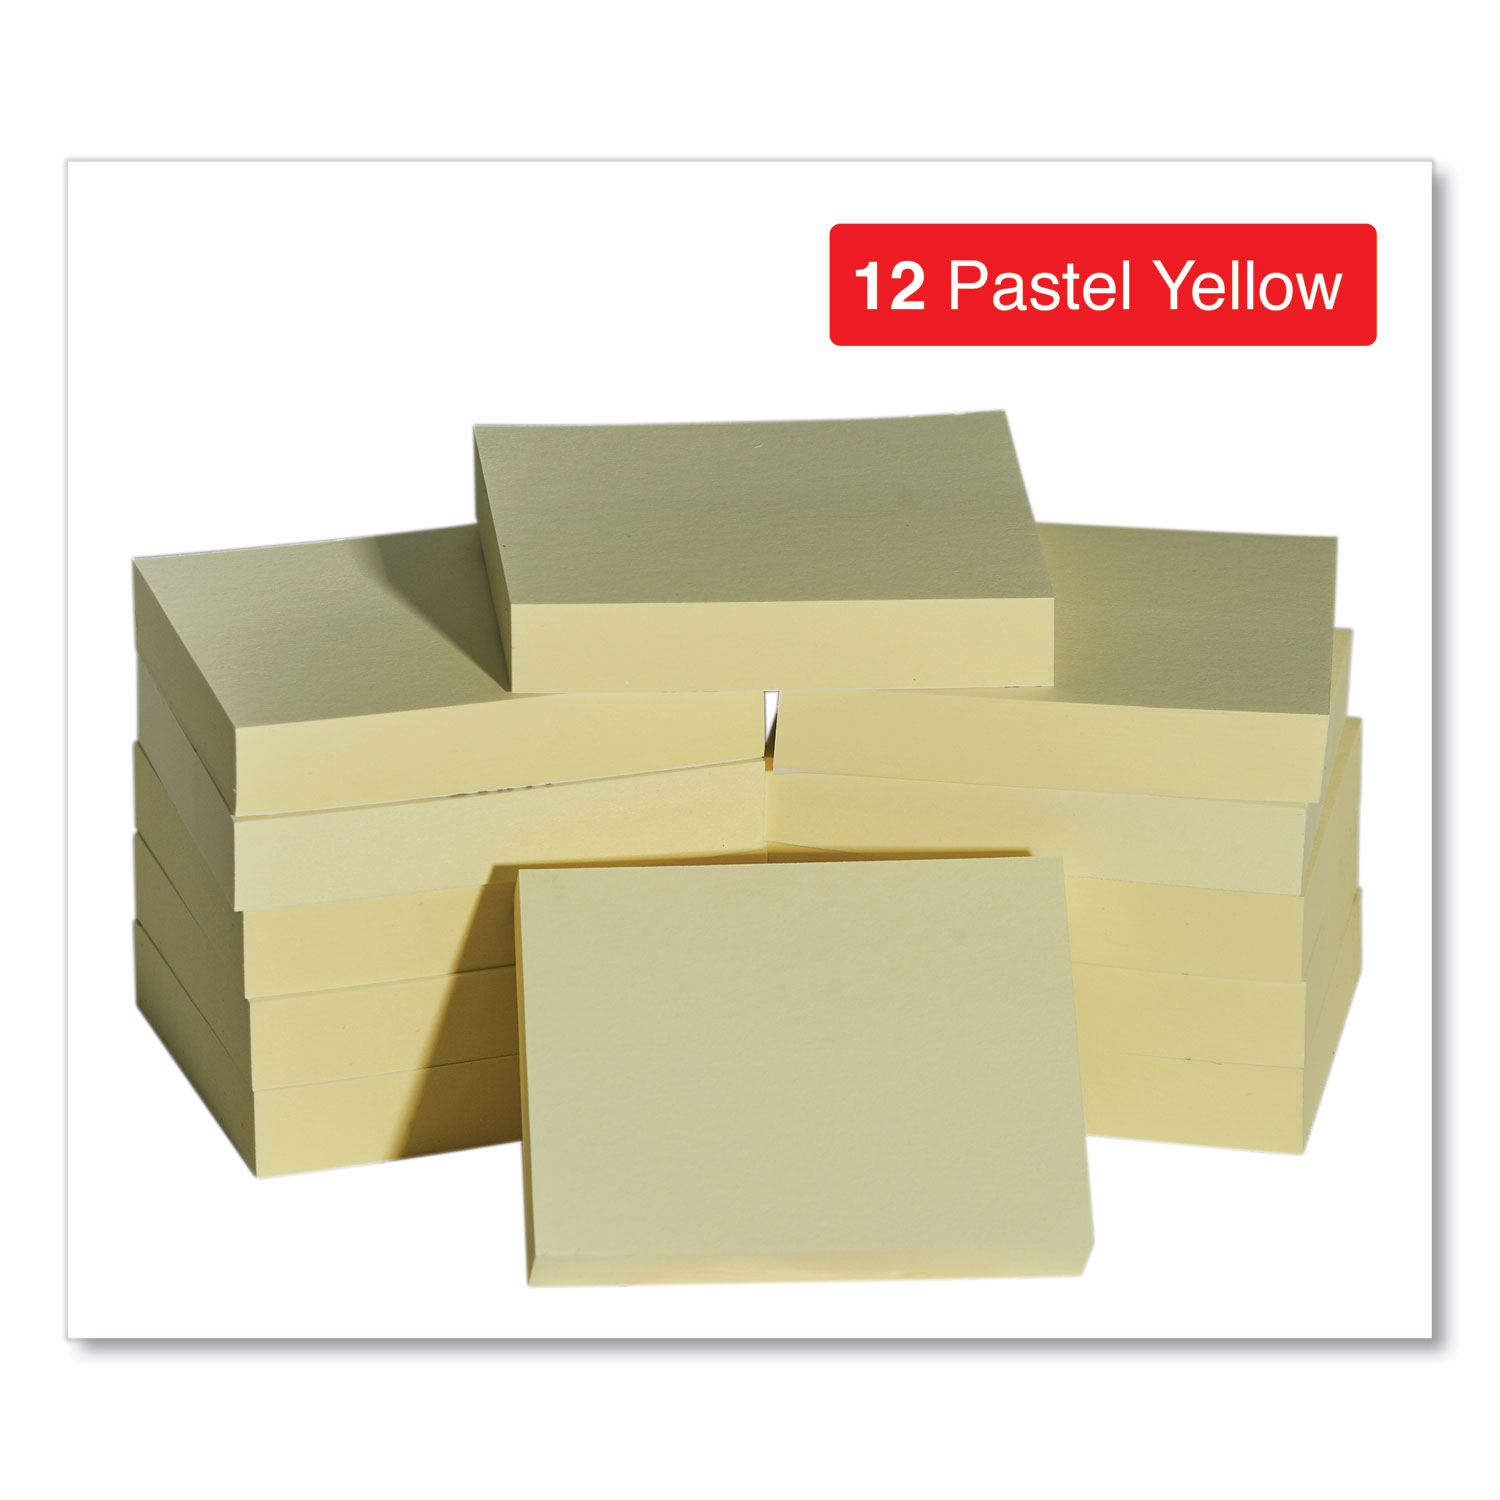 SKILCRAFT Self-Stick Note Pads 3 x 5 Unruled Yellow 100 Sheets Dozen